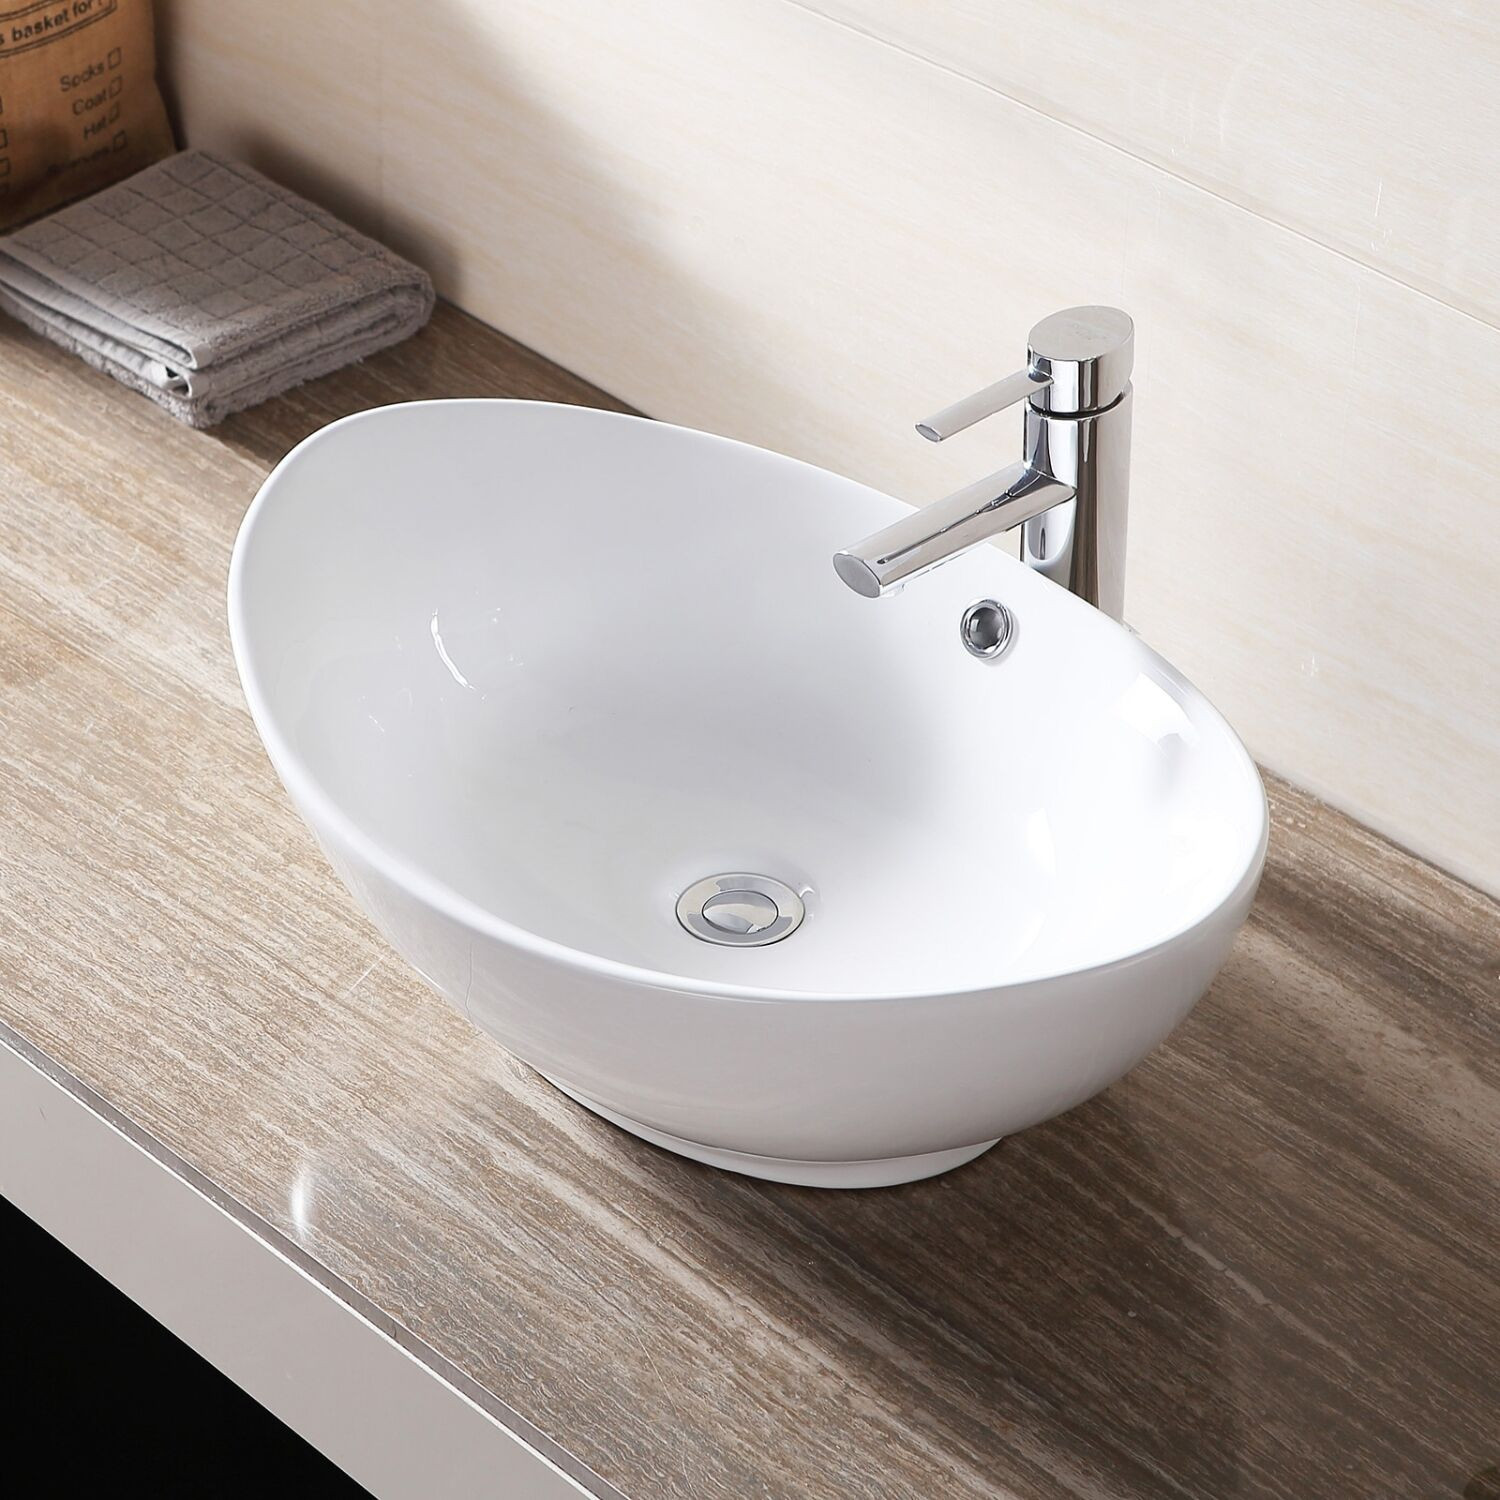 Bathroom Vanity Bowls
 Oval Vessel Bathroom Sink Vanity Basin Porcelain Ceramic